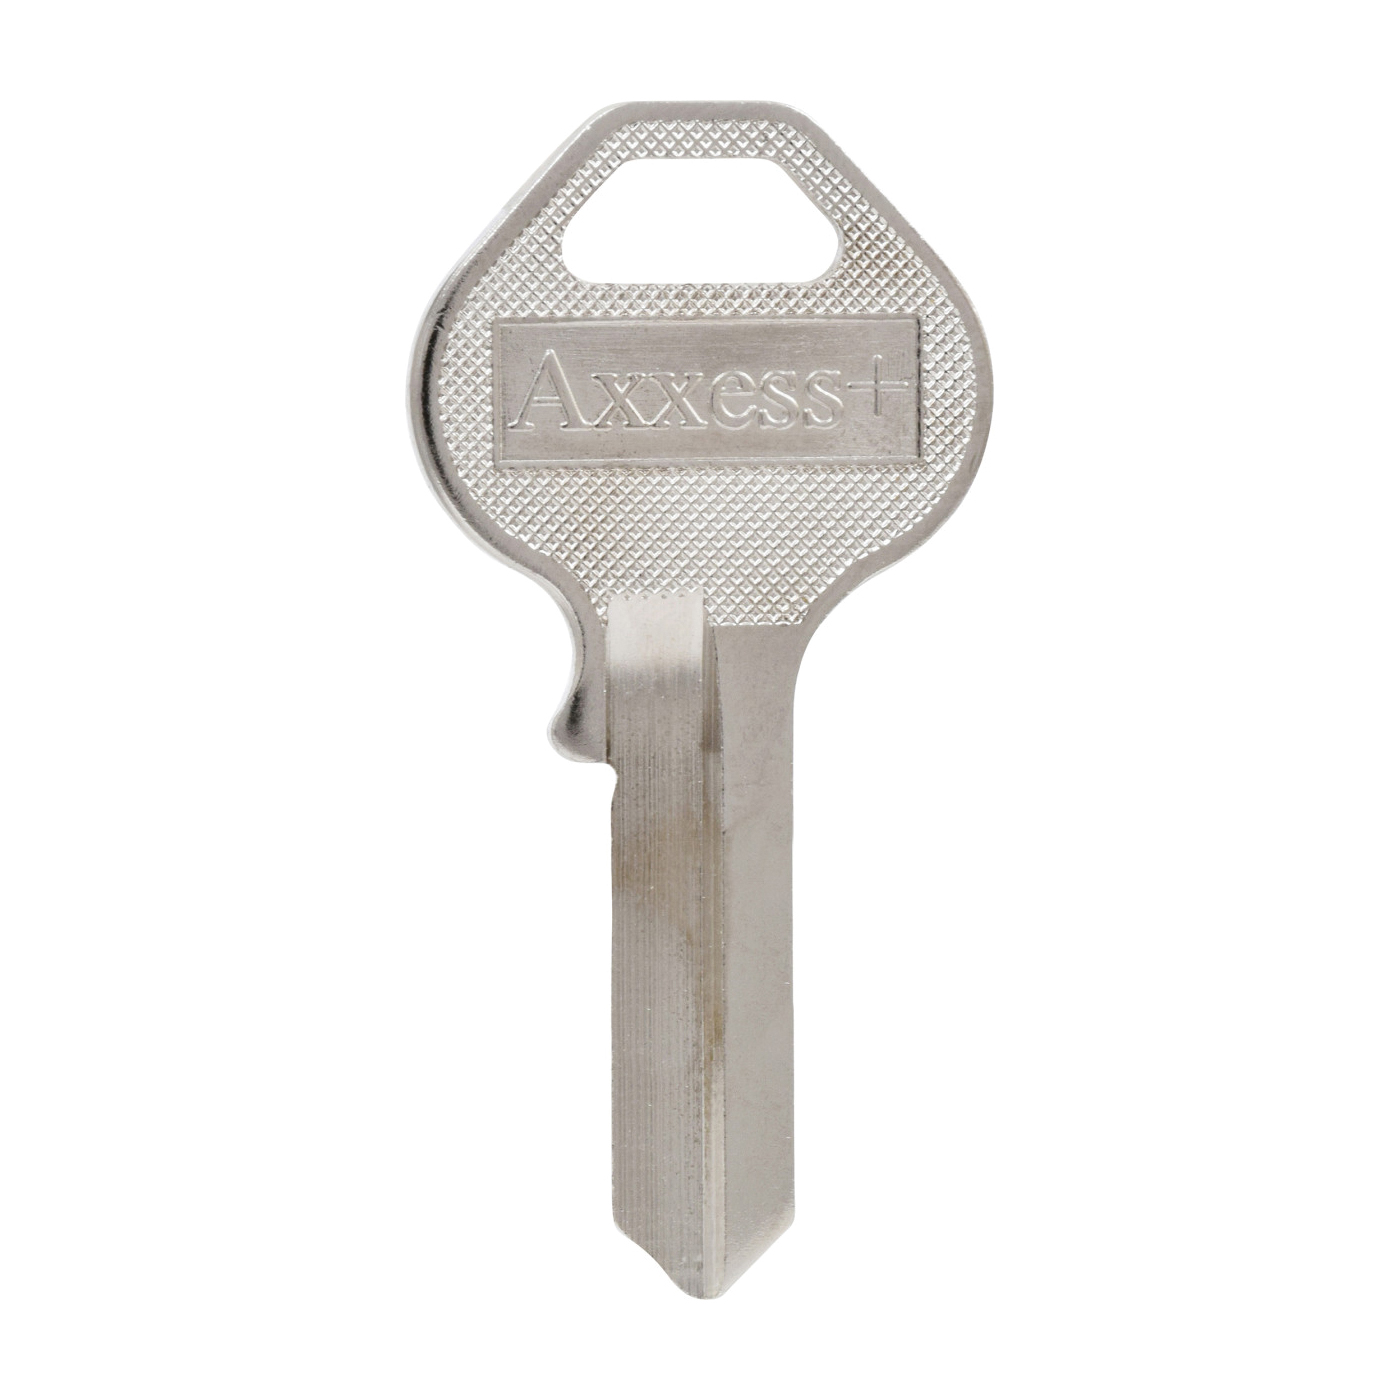 Hillman 88556 Key Blank, Brass, For: Master Locks Padlocks